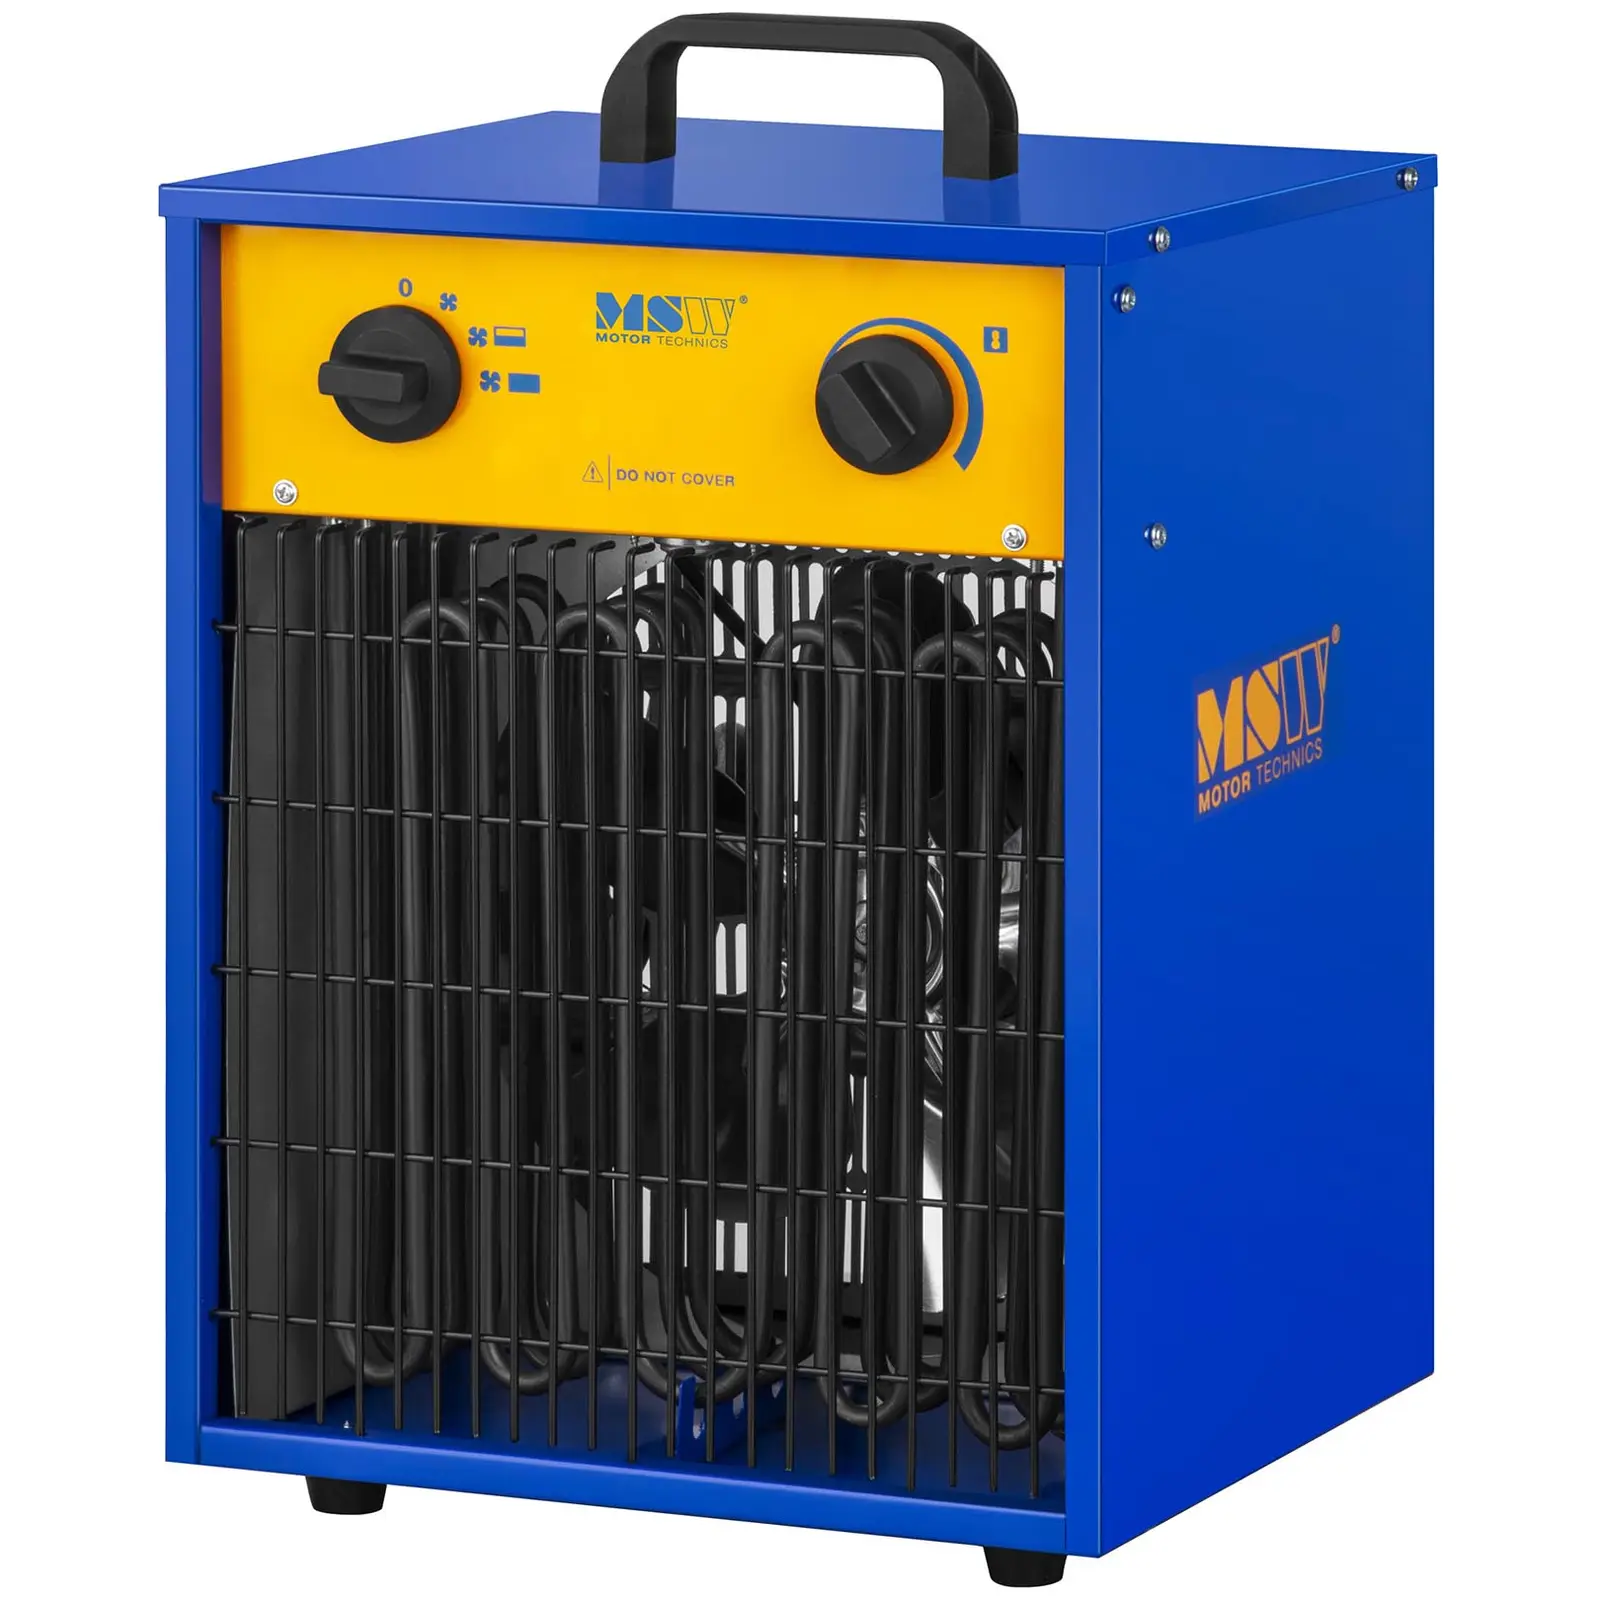 Elektroheizer mit Kühlfunktion - 0 bis 85 °C - 9.000 W